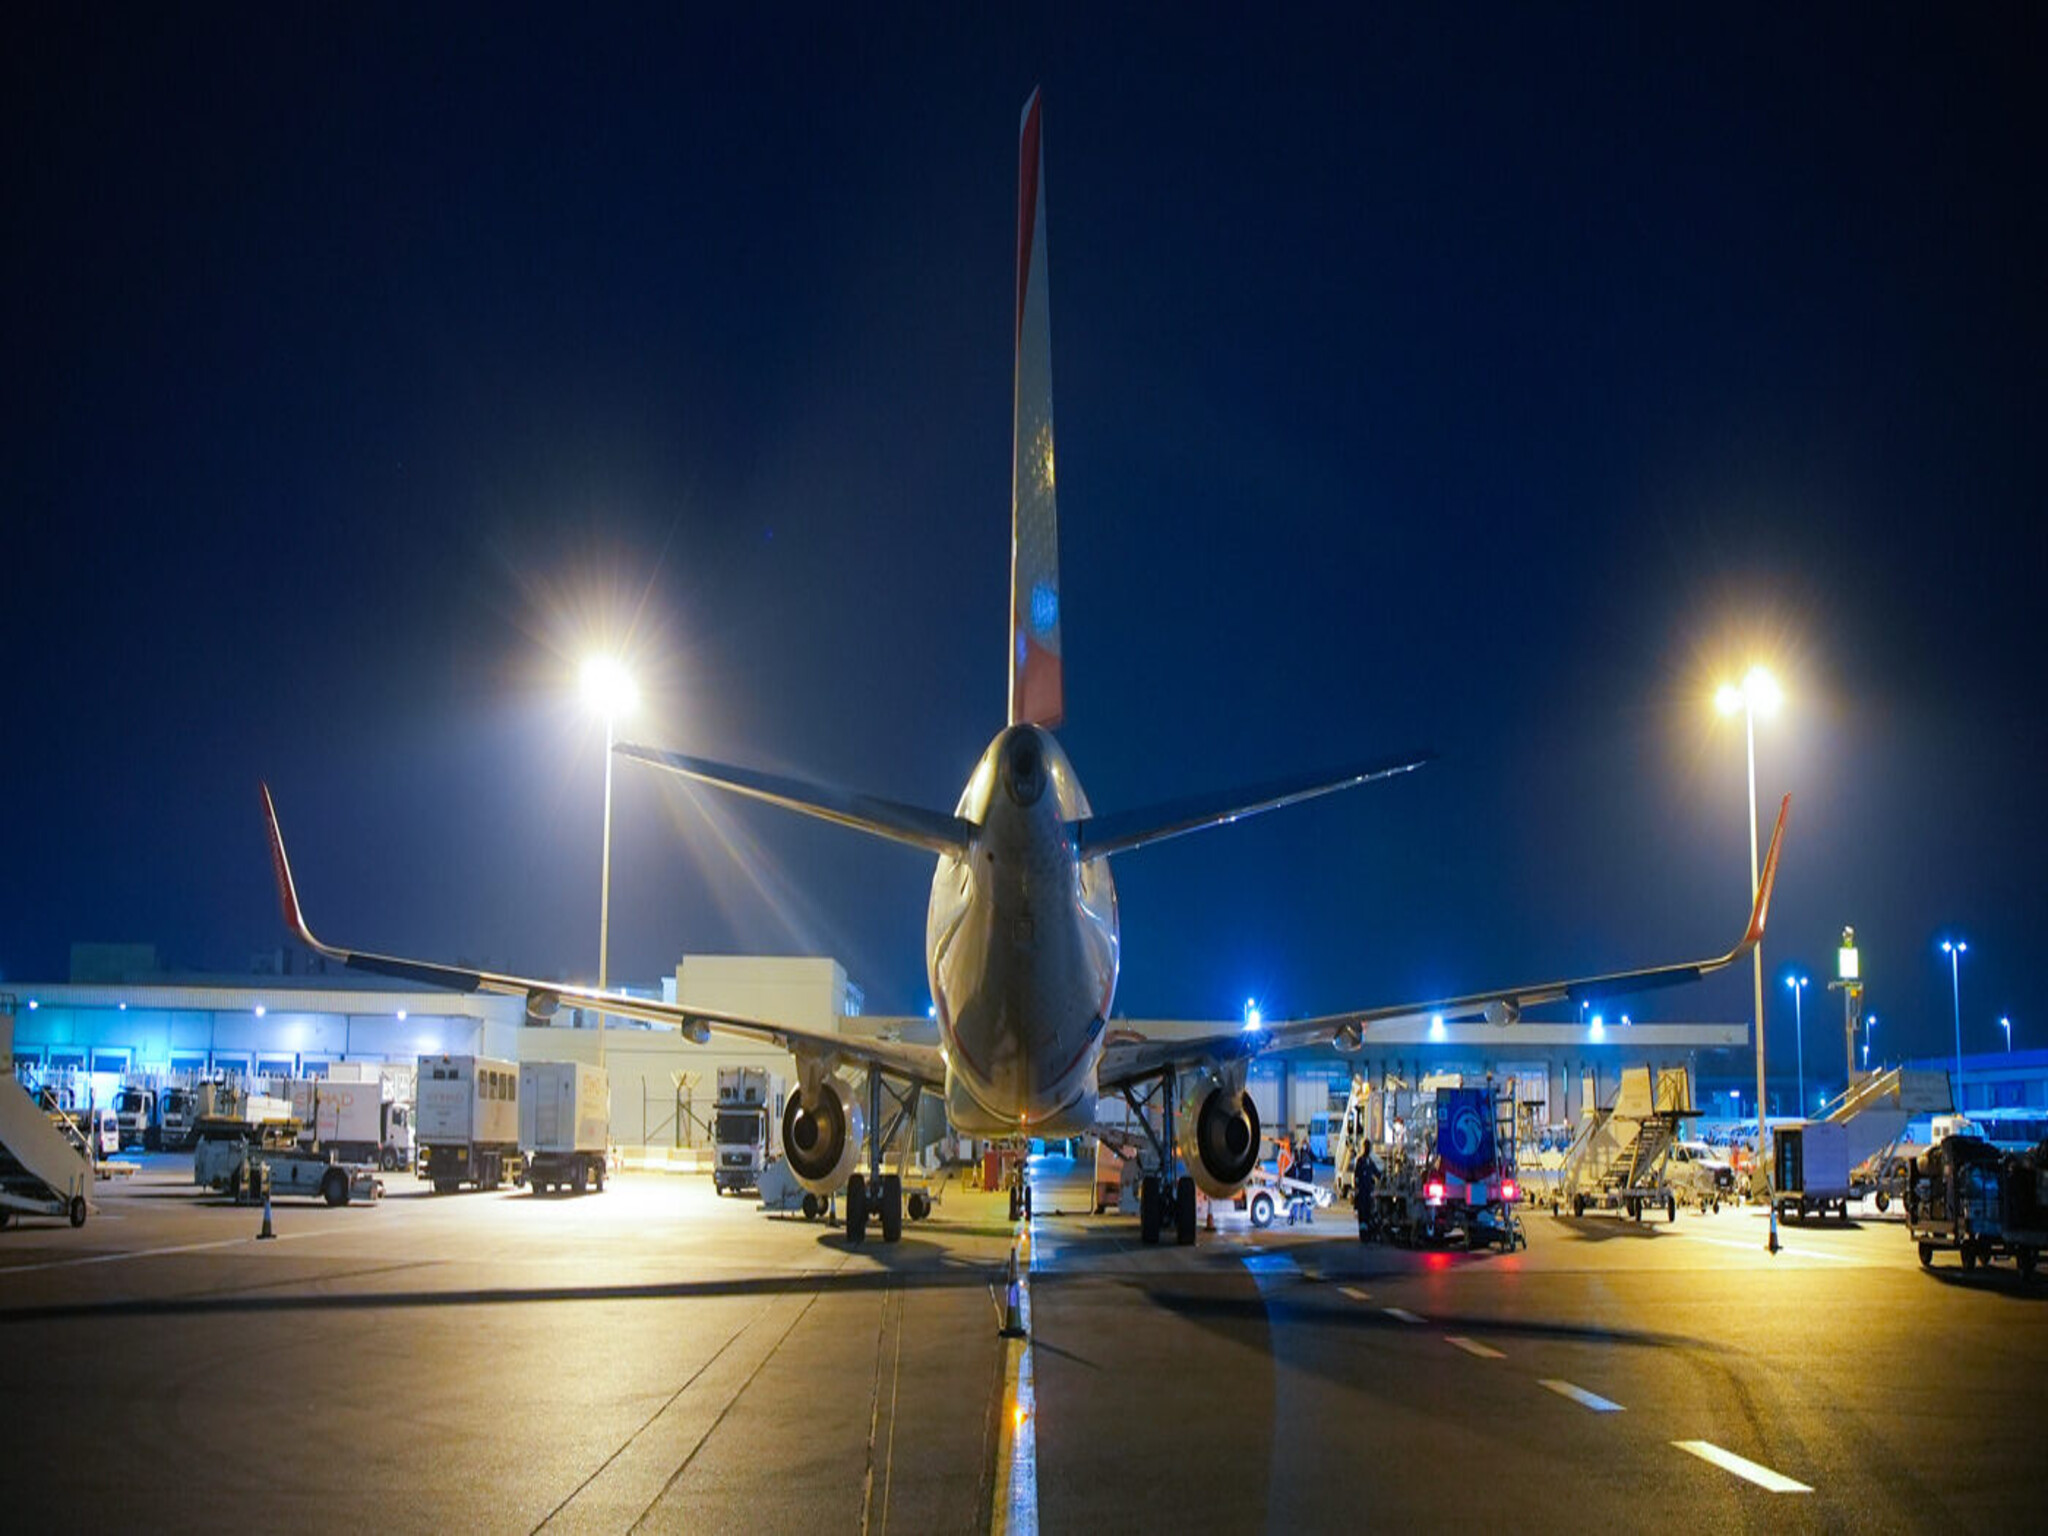 شركات طيران في الإمارات تعلن إلغاء الرحلات من وإلى مطار دبي بسبب صعوبات التشغيل